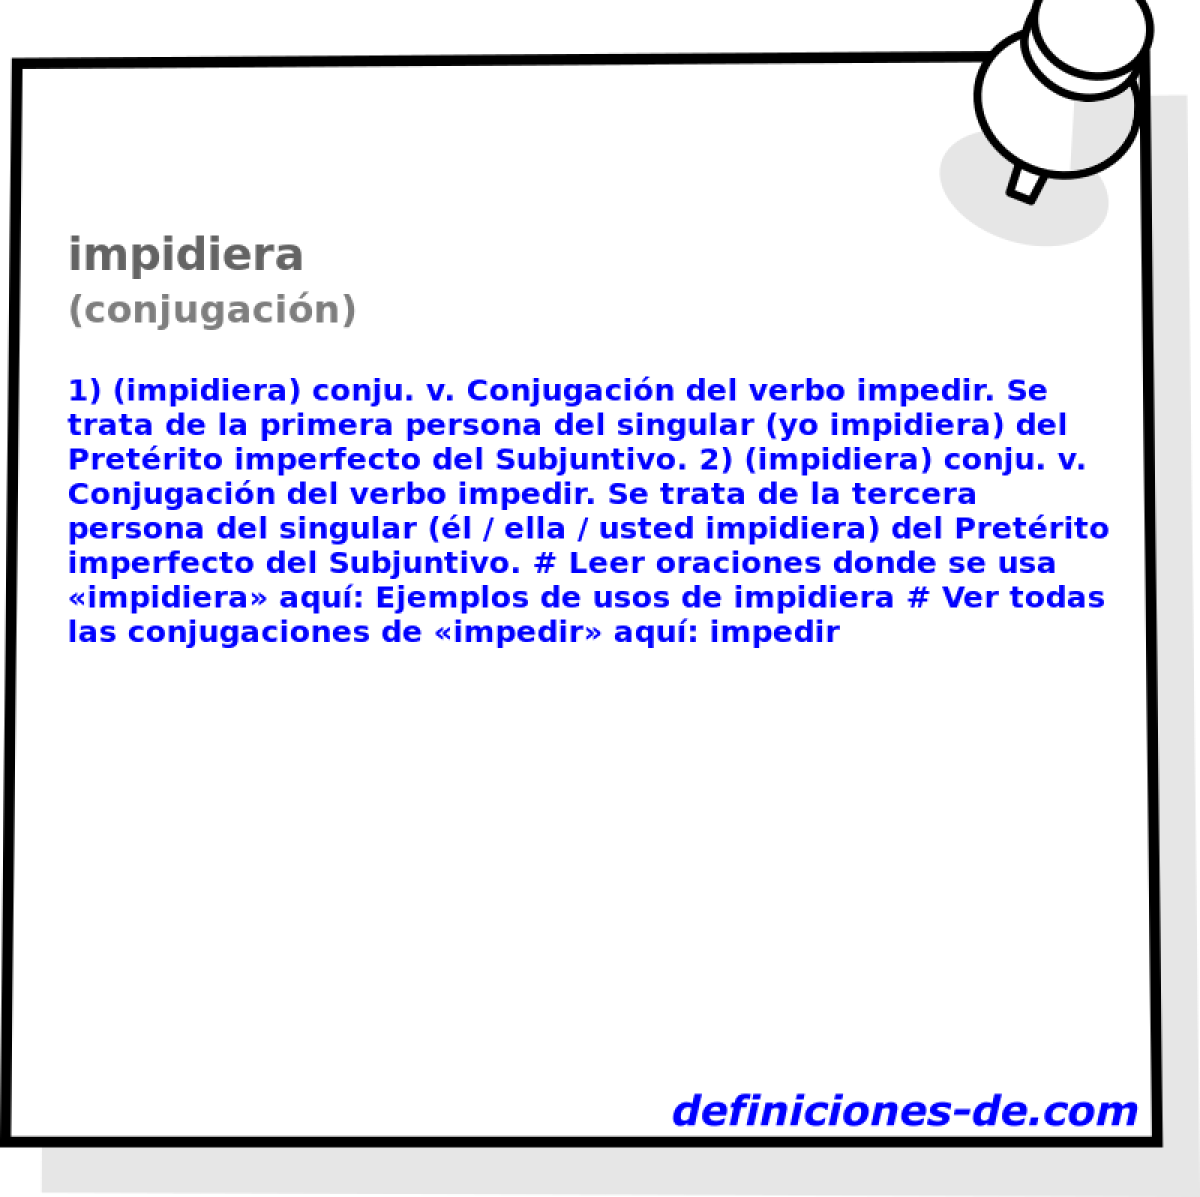 impidiera (conjugacin)